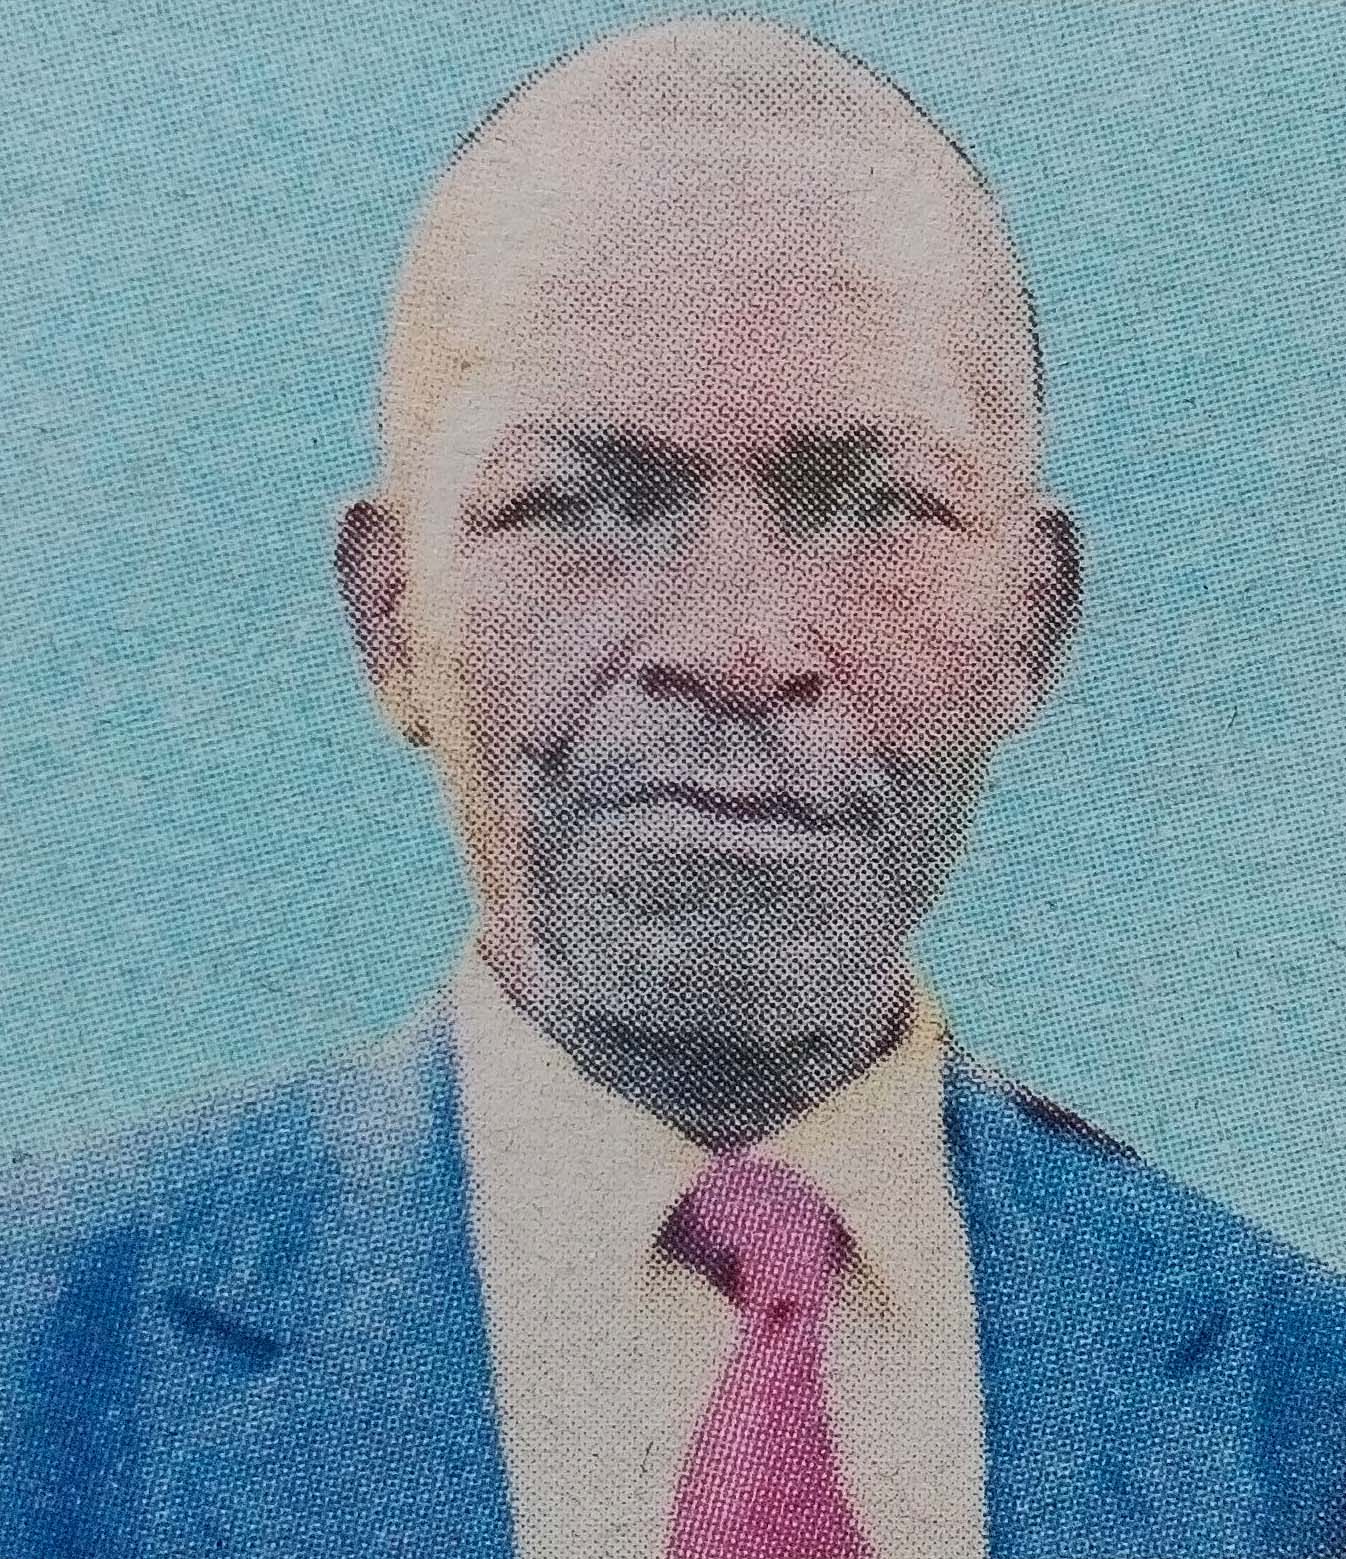 Obituary Image of Mwalimu Samue Kinyua Gathu